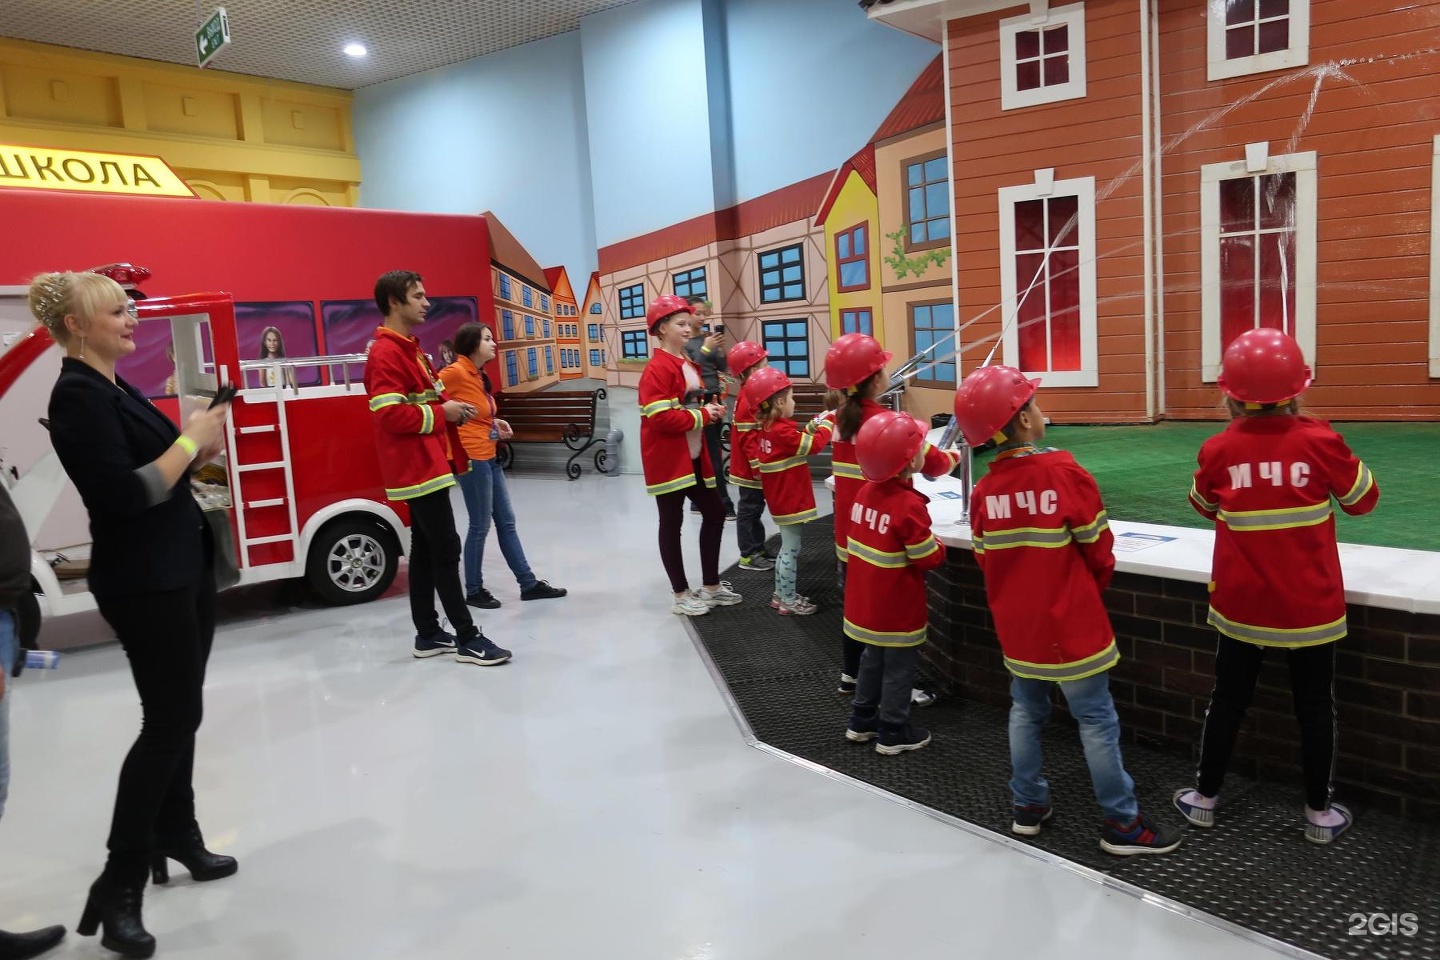 Город профессий для детей в москве